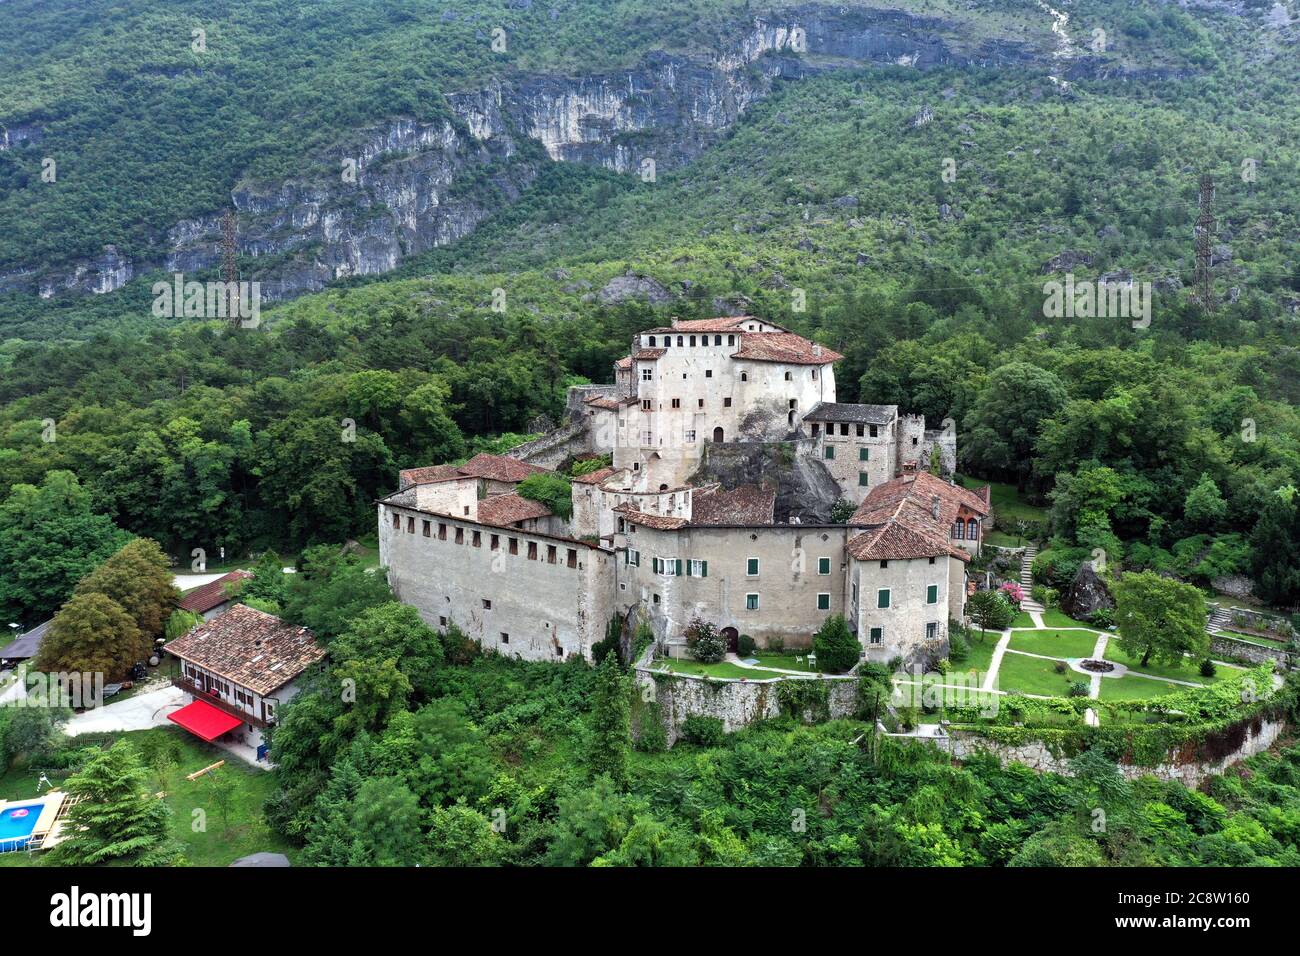 Vista aerea di Castel pietra, maniero situato sul pendio della collina di Castel Beseno, costruito su un enorme masso staccato dal Cengio Rosso Foto Stock